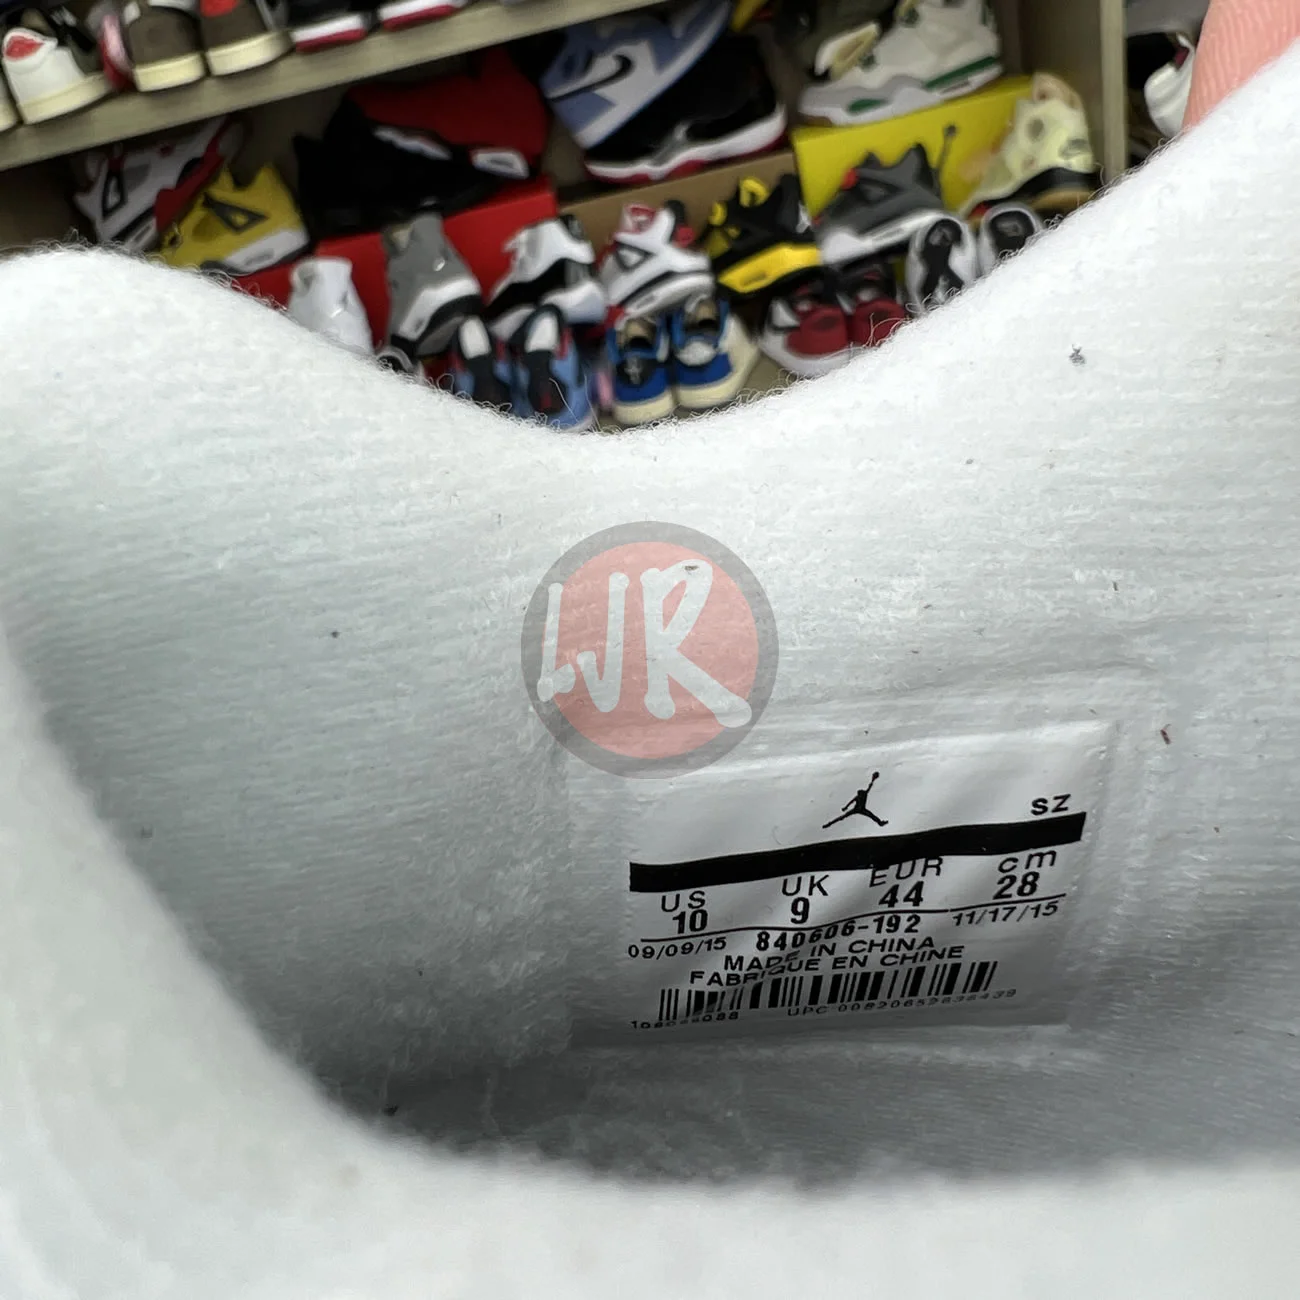 Air Jordan 4 Retro White Cement 2016 840606 192 Ljr Sneakers (21) - bc-ljr.com